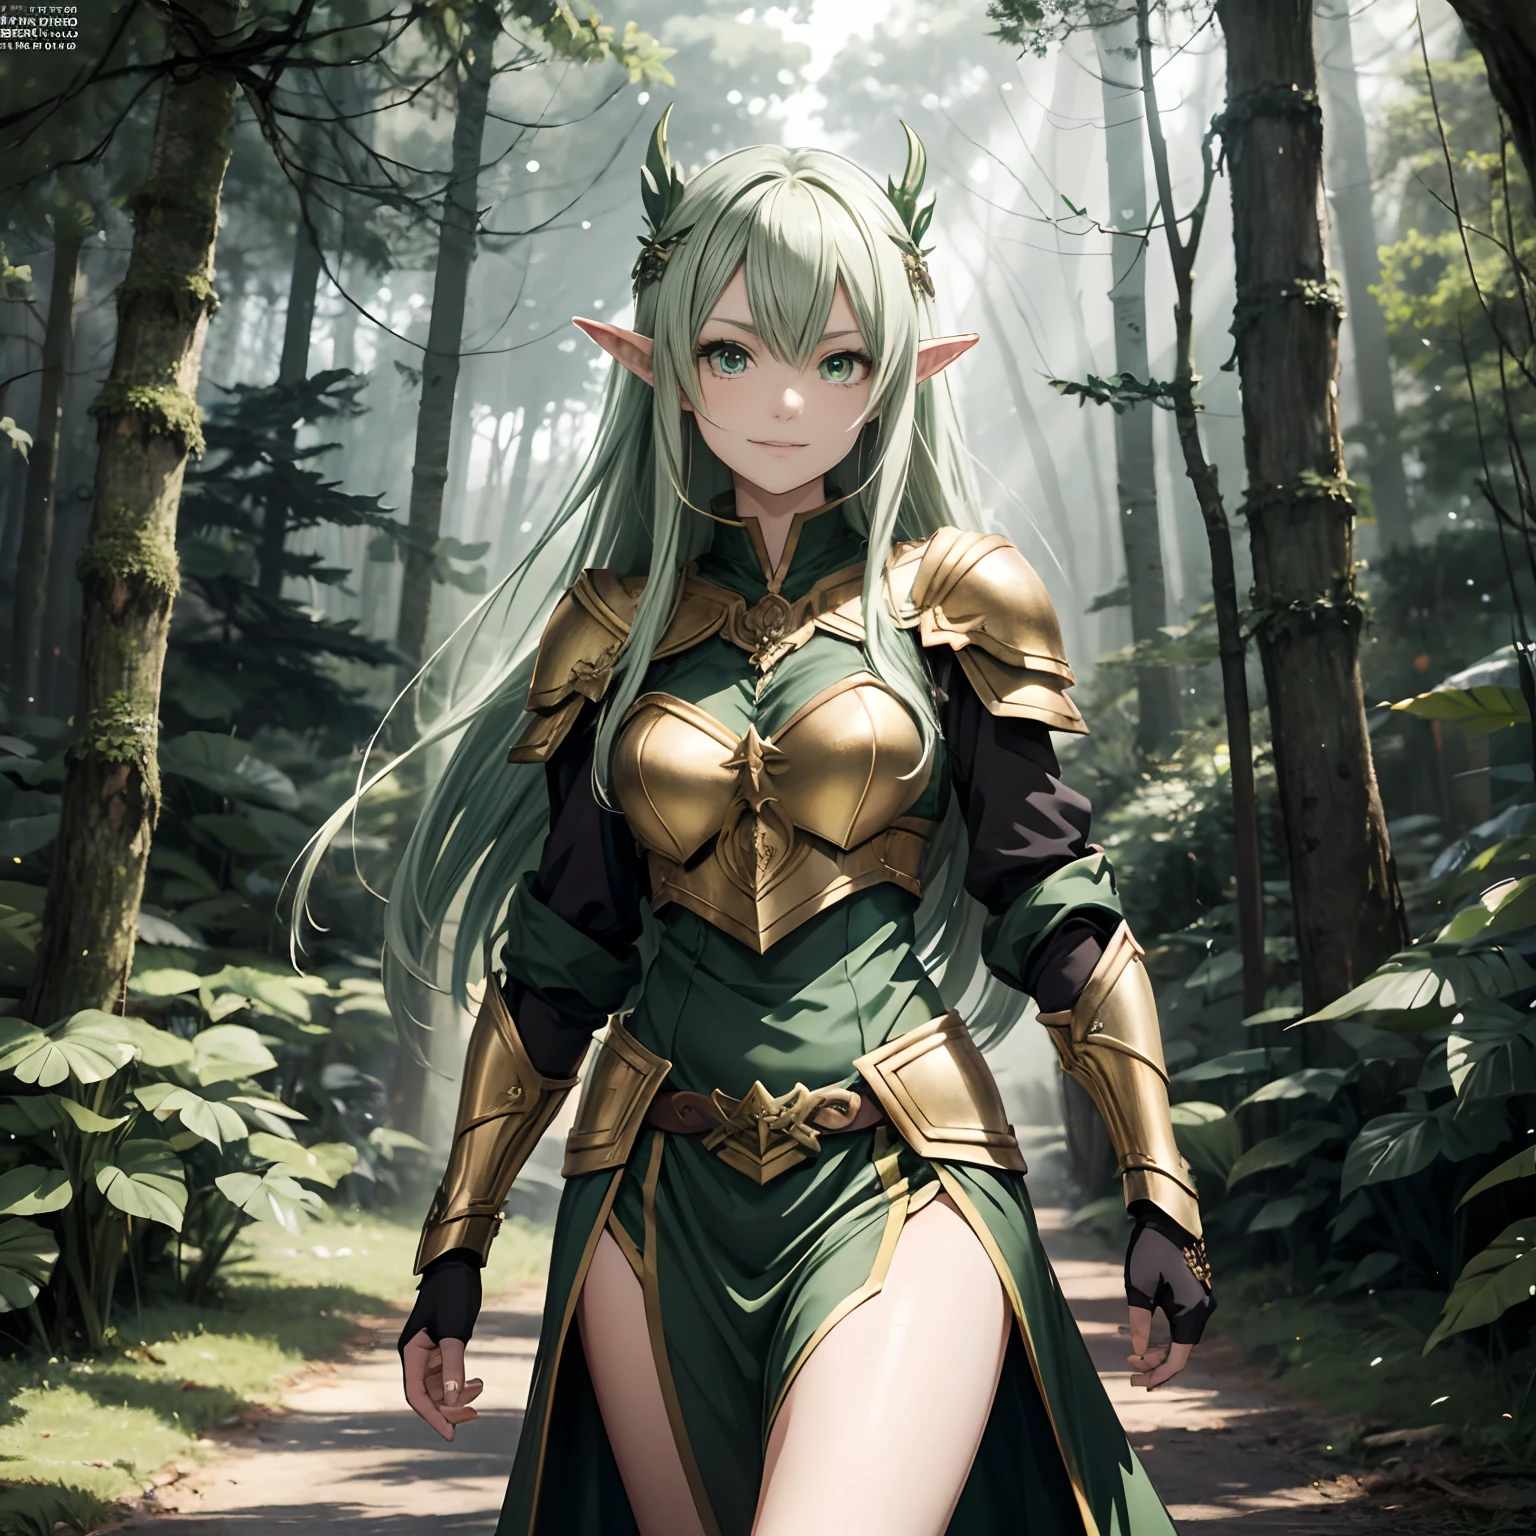 Style animé, fille elfe, (yeux verts), se promener dans une forêt, forêt Noire, (armure sur les épaules), 8k, (dessus de la table), Haute qualité, Haute définition, (((belle main))),sourire